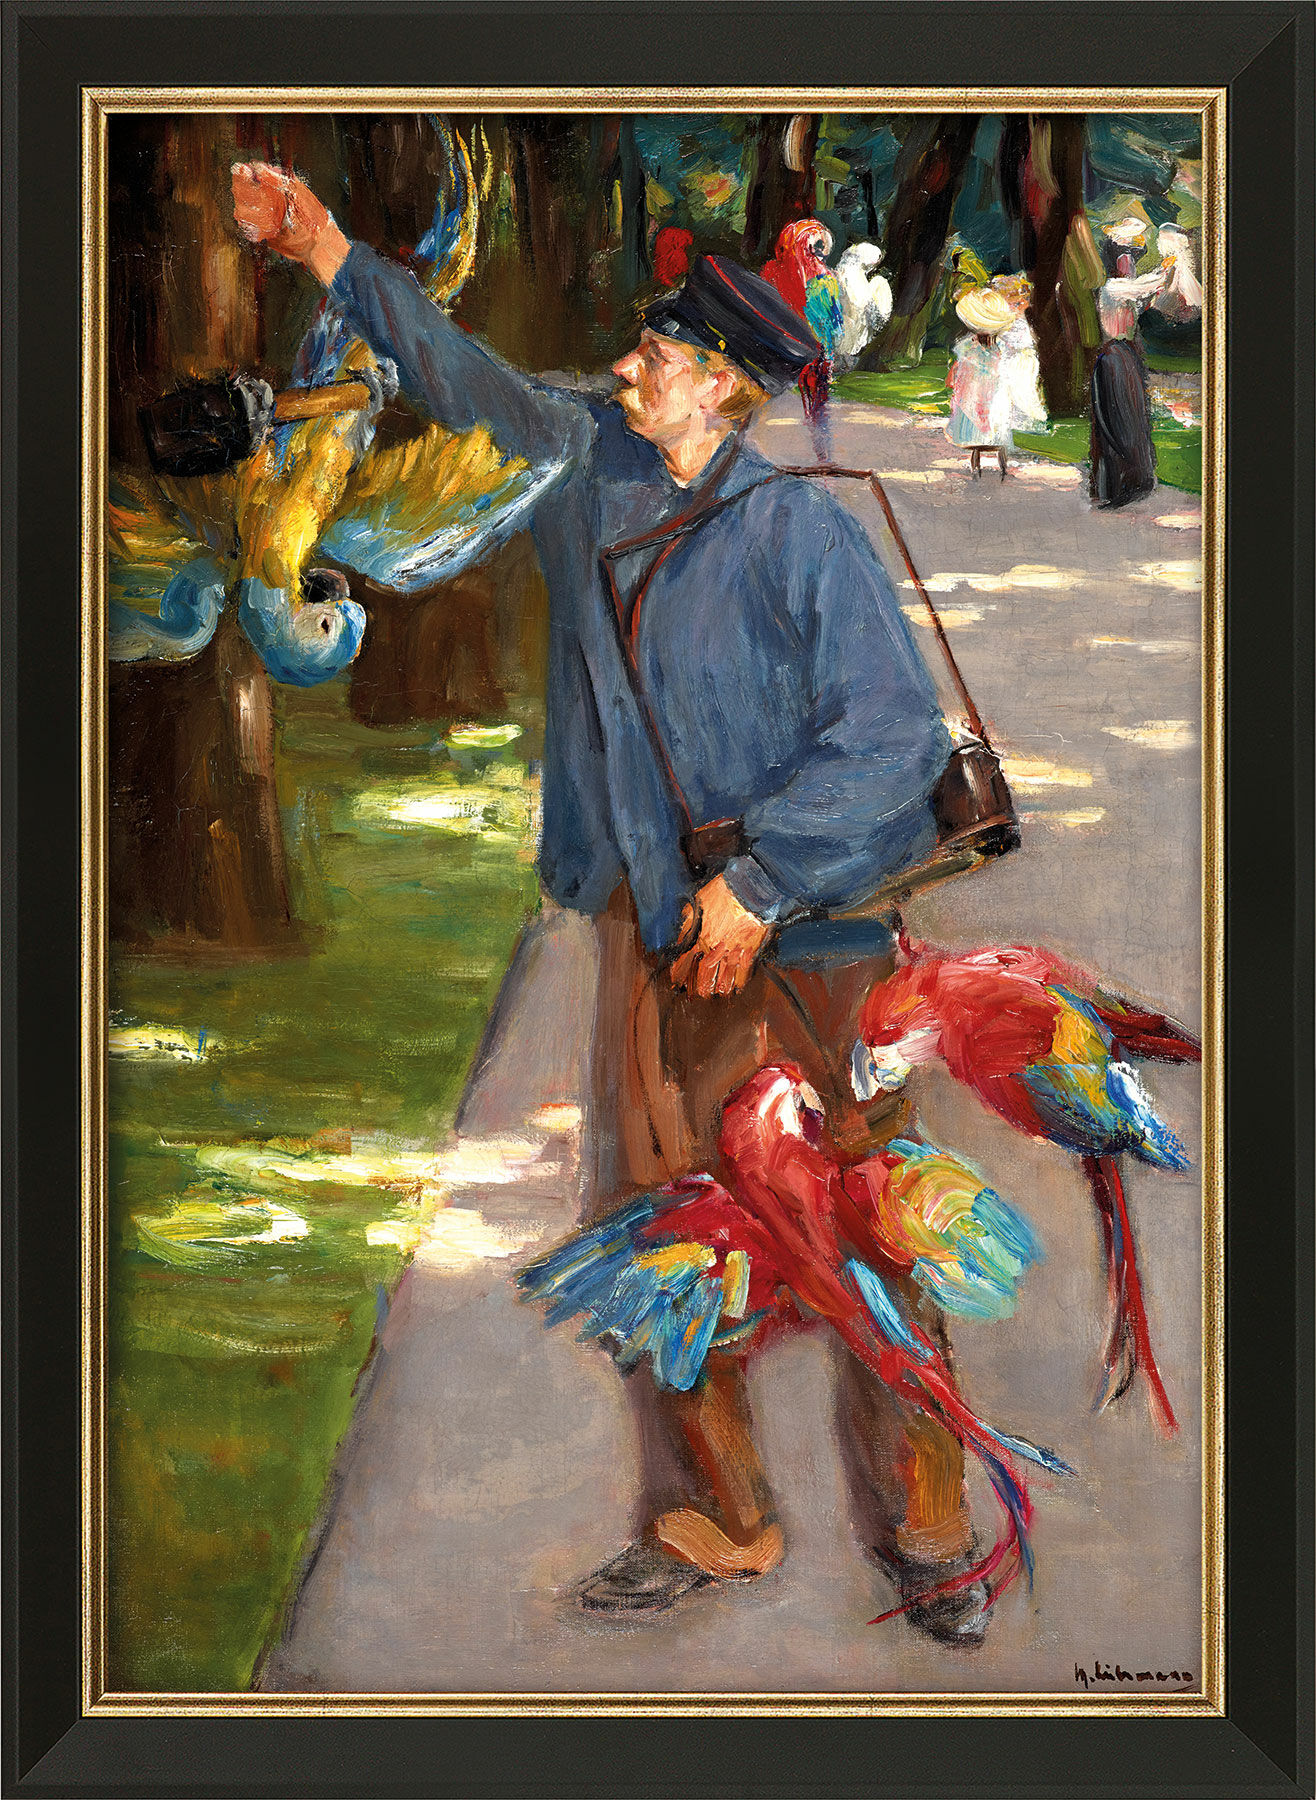 Billede "Papegøjemanden" (1902), indrammet von Max Liebermann